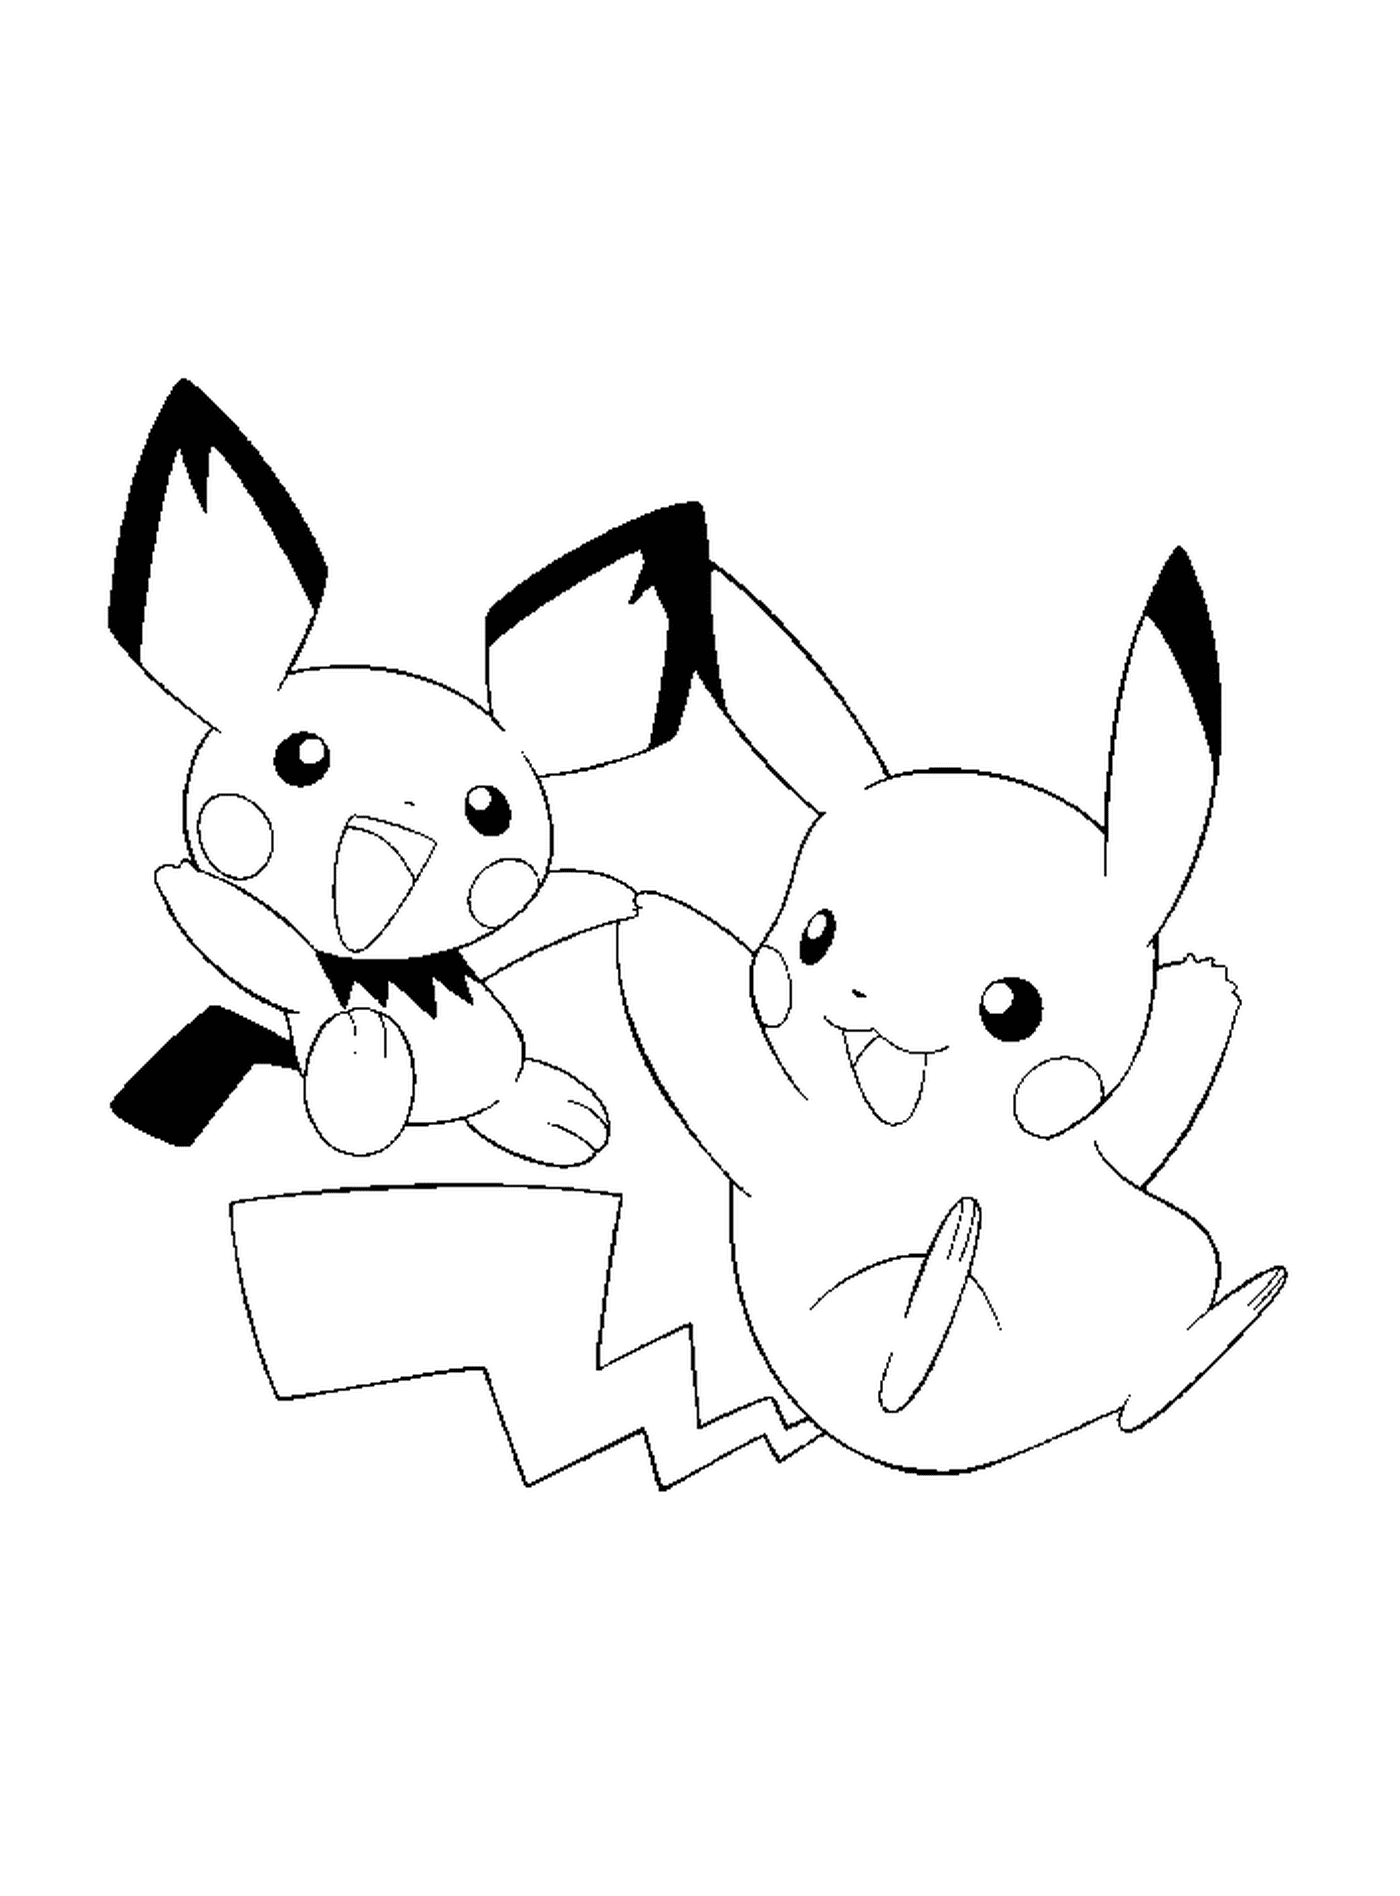   Pikachu et Pichu, amis inséparables 